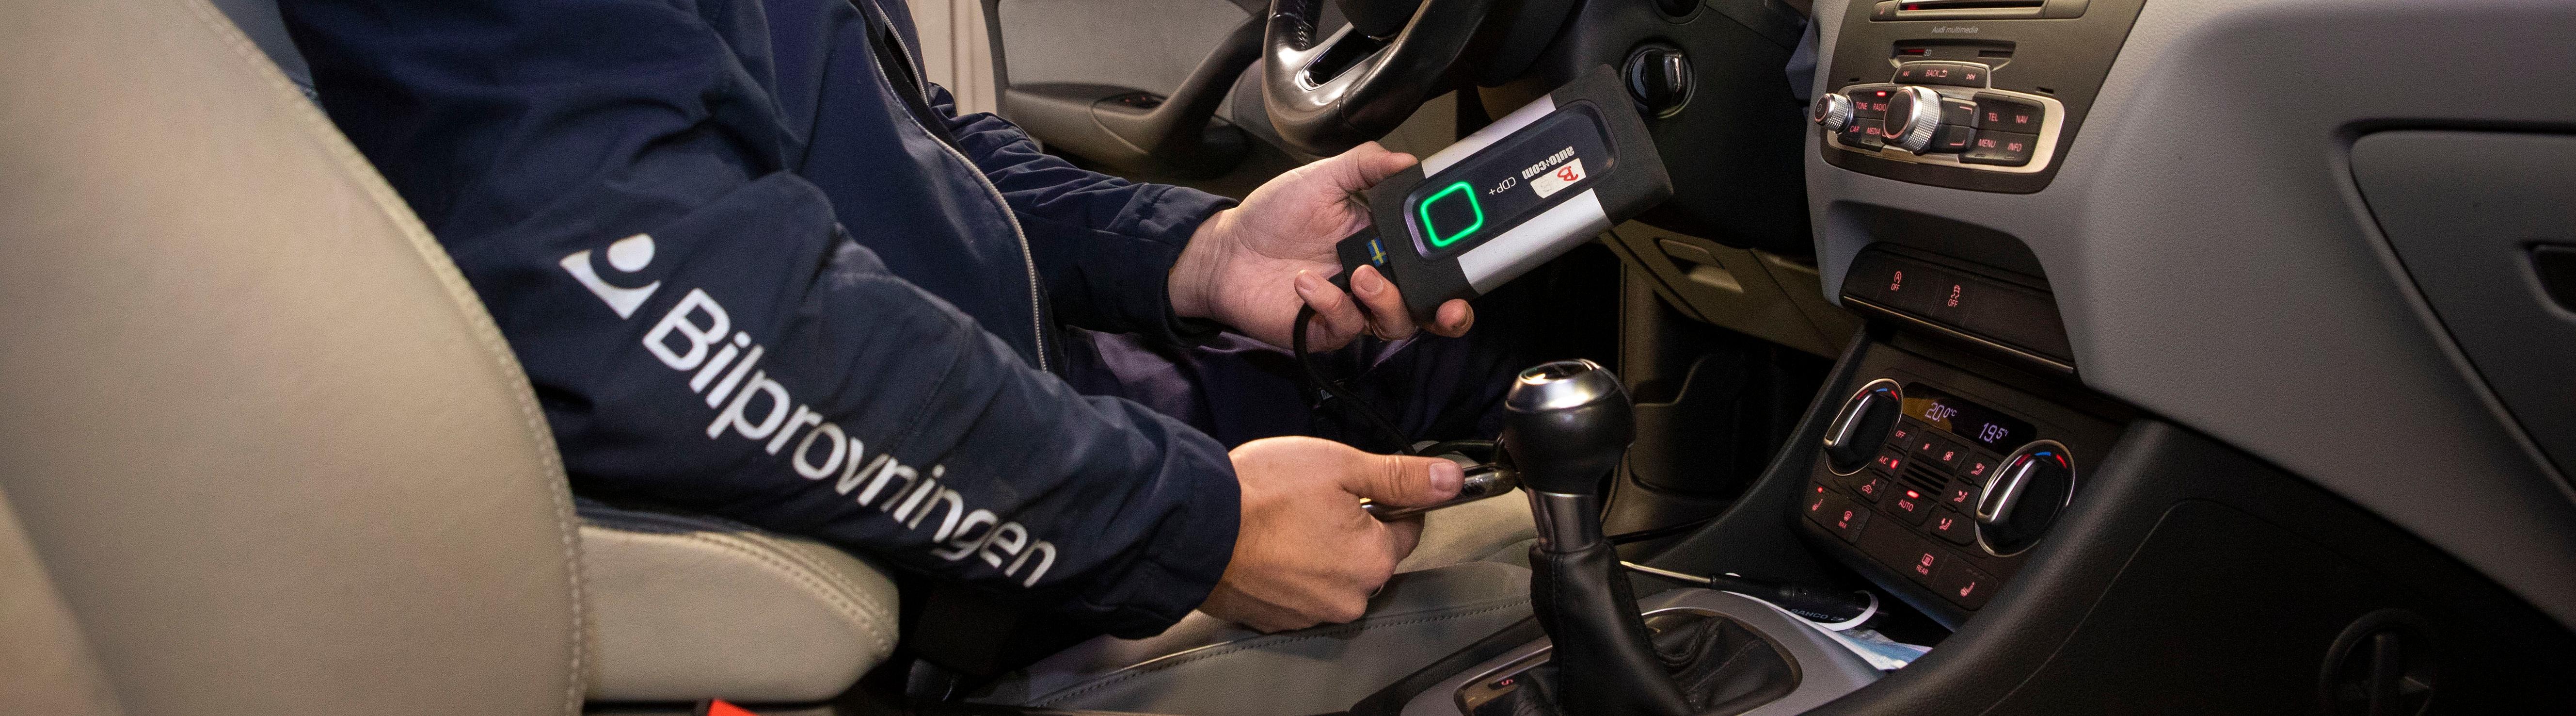 Besiktningstekniker kontrollerar elektroniken i en bil